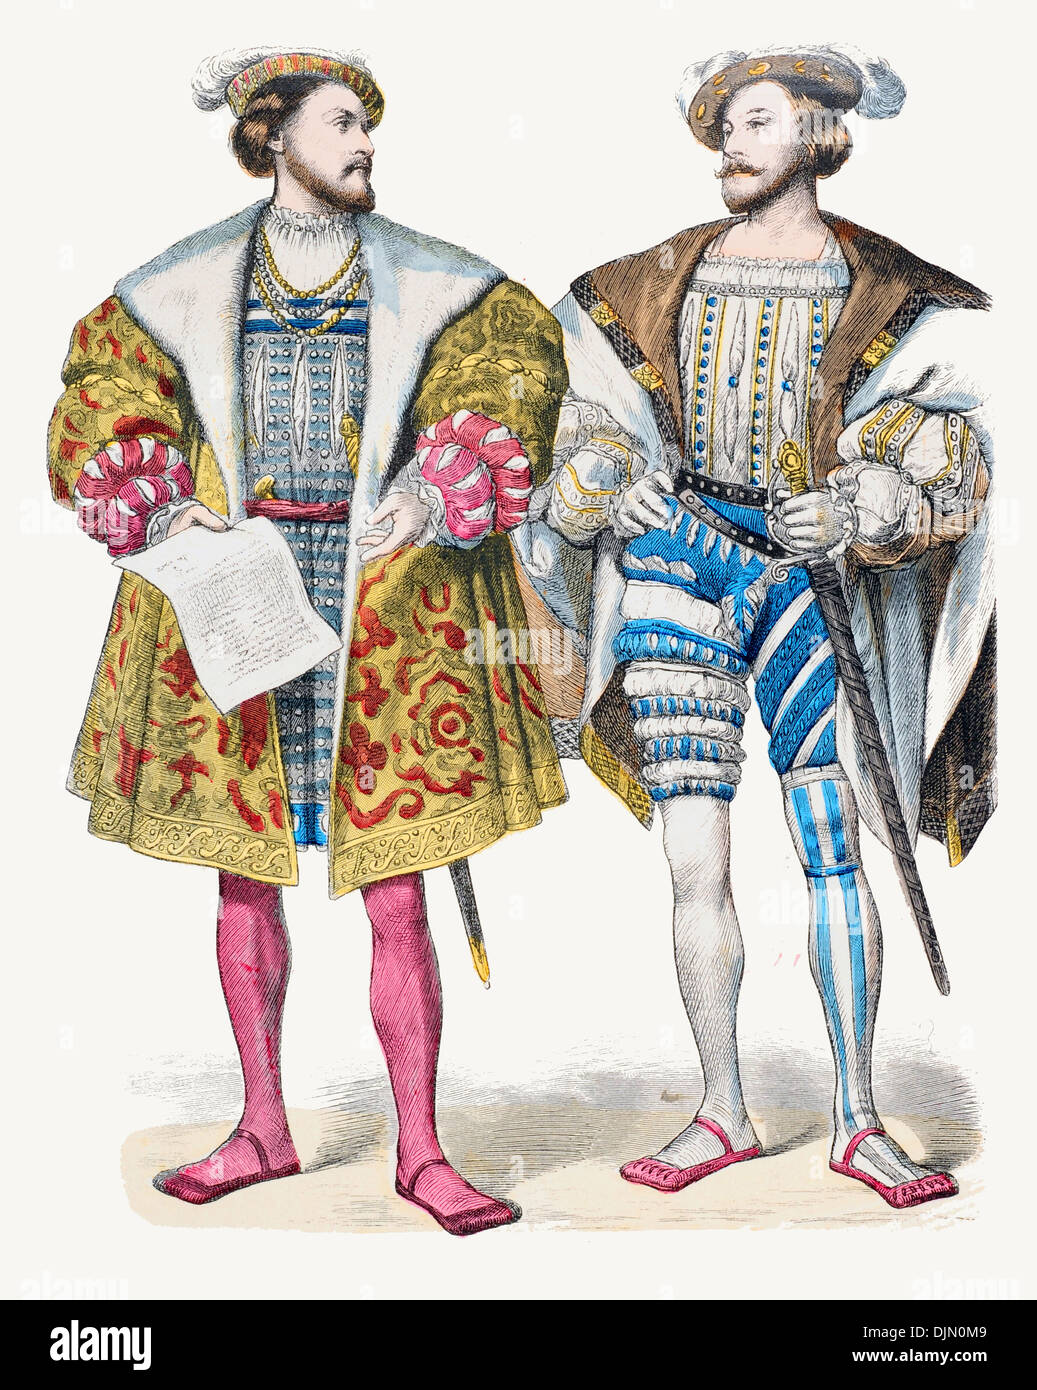 Xvi secolo XVI 1500s Francia da sinistra a destra Henri d'Albret, Re di Navarra, Duc Claude de Lorraine D'Aumale Foto Stock